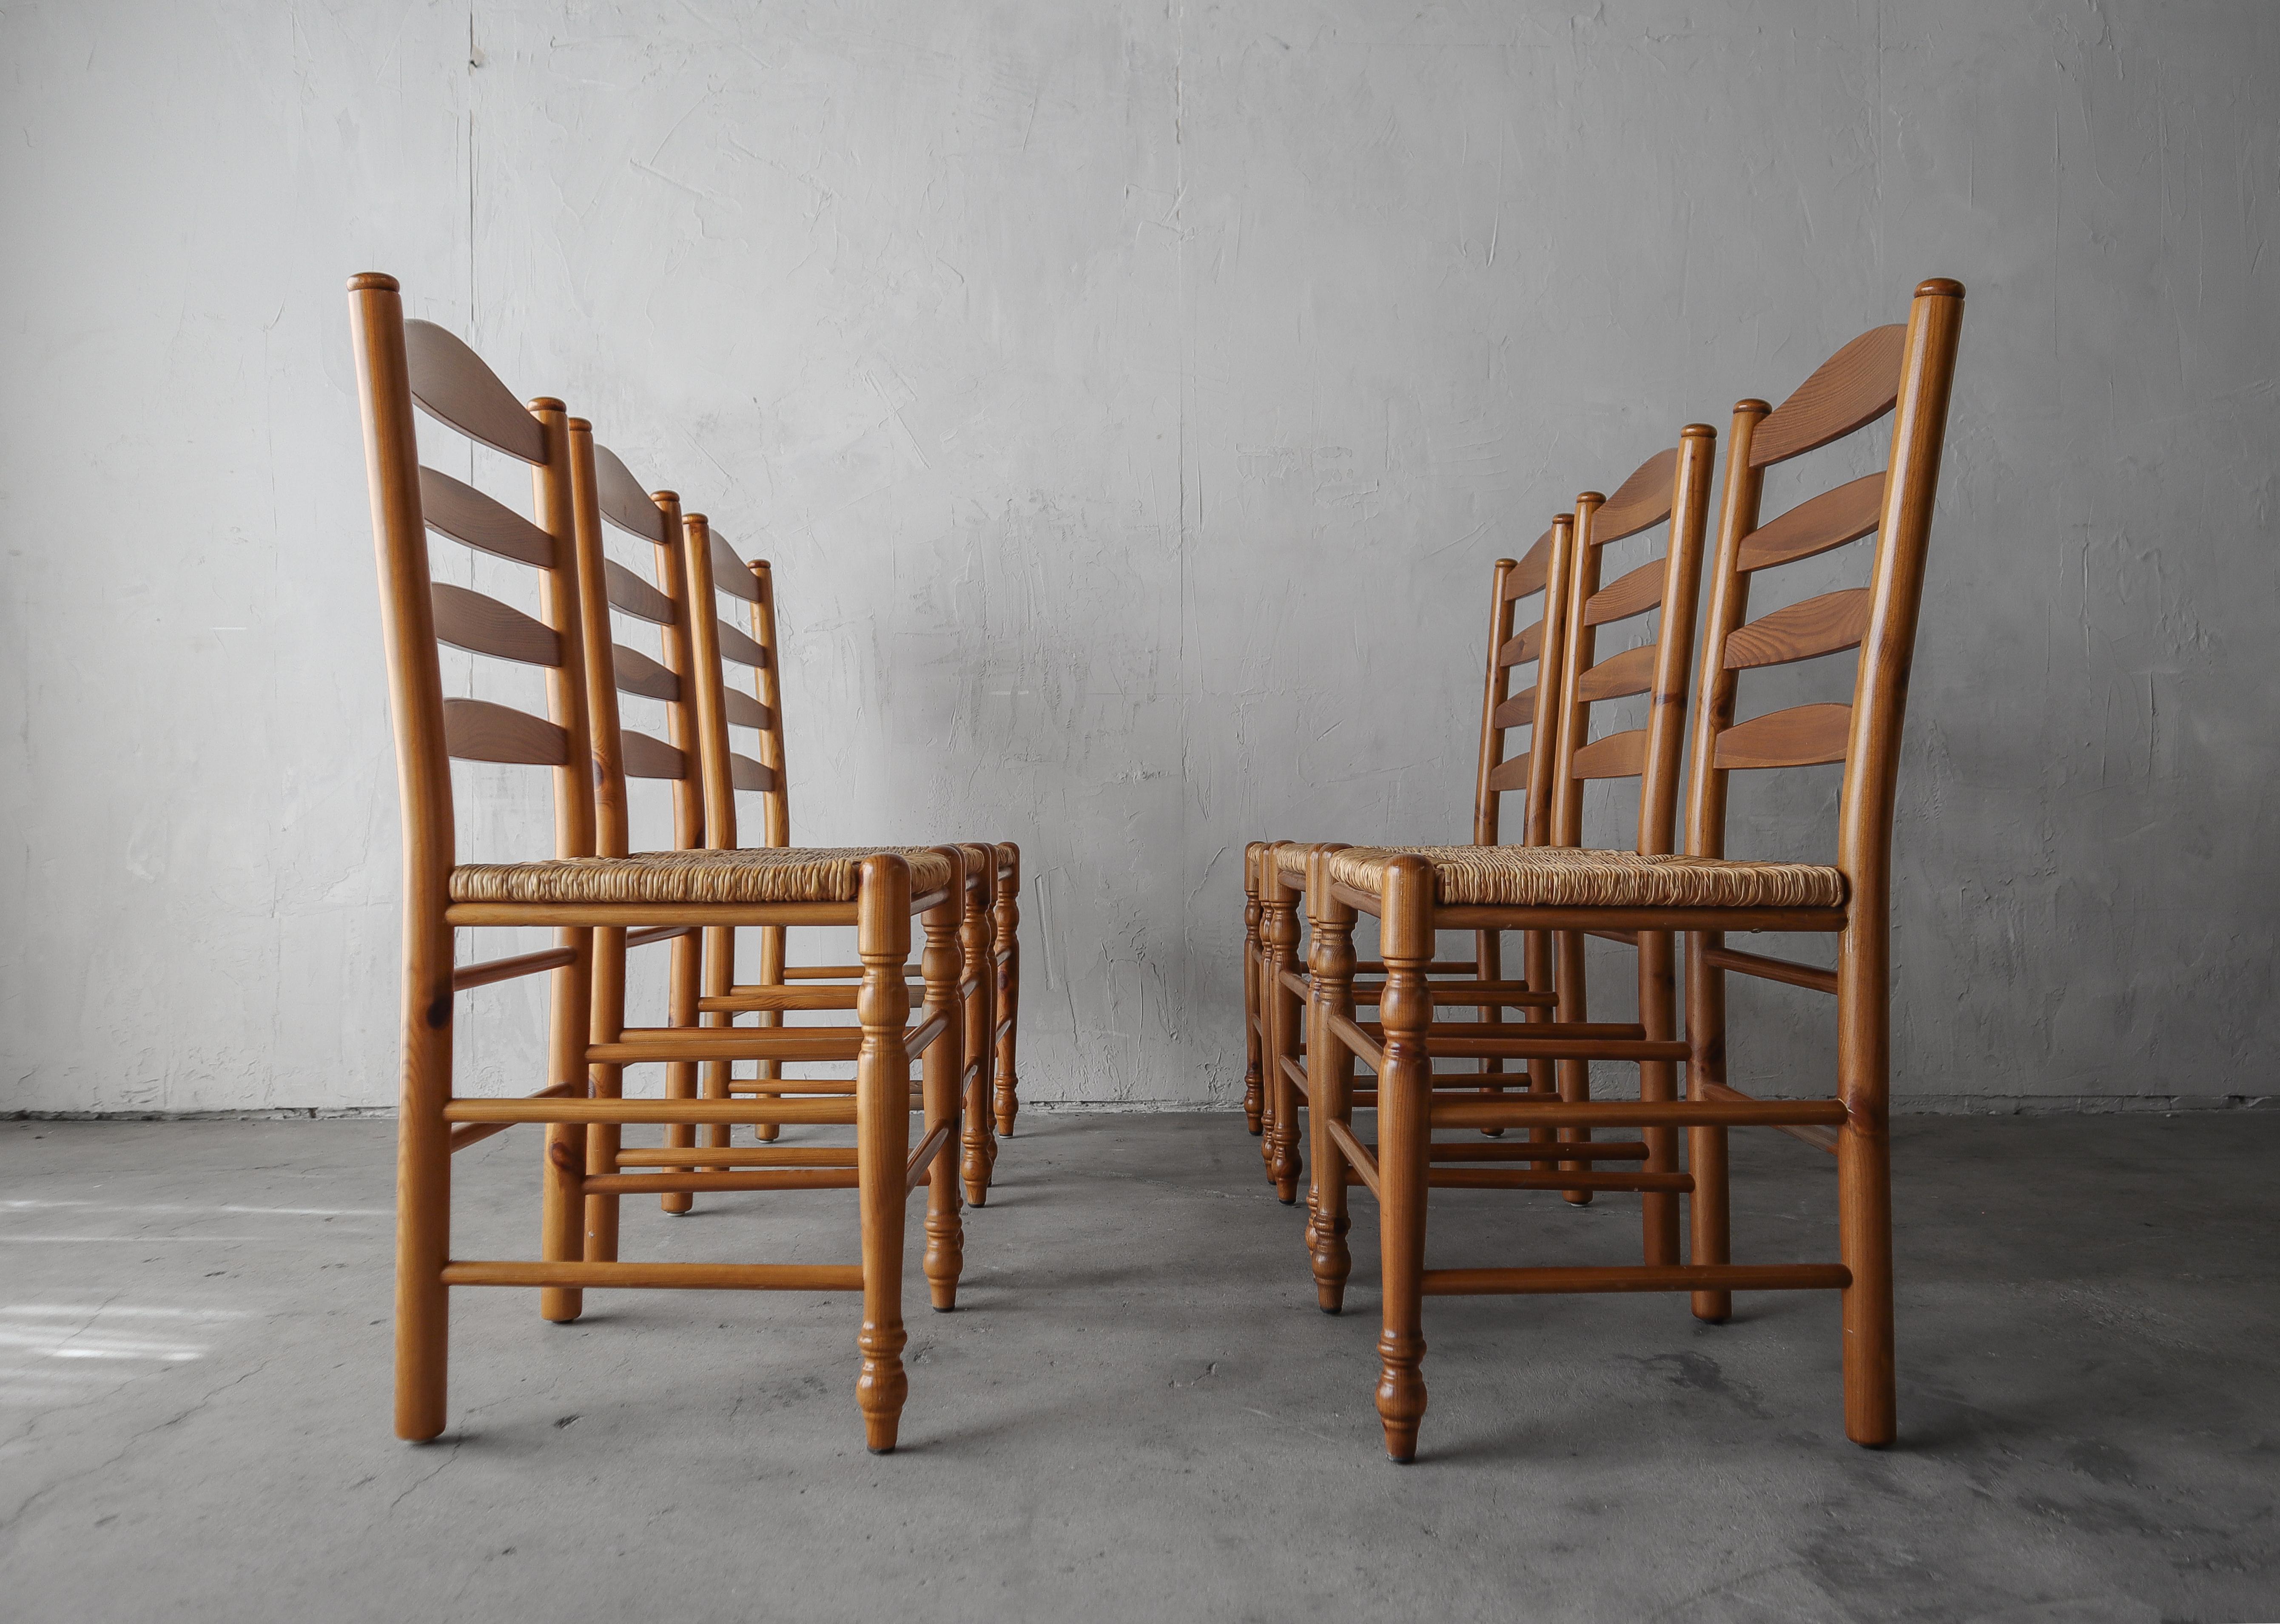 Schöner Satz von 6 italienischen Binsen und Kiefer Esszimmerstühle.  Schönes minimalistisches Design.

Die Stühle sind insgesamt in gutem Zustand und weisen nur minimale Gebrauchsspuren auf. Die ursprüngliche Eile ist in ausgezeichnetem